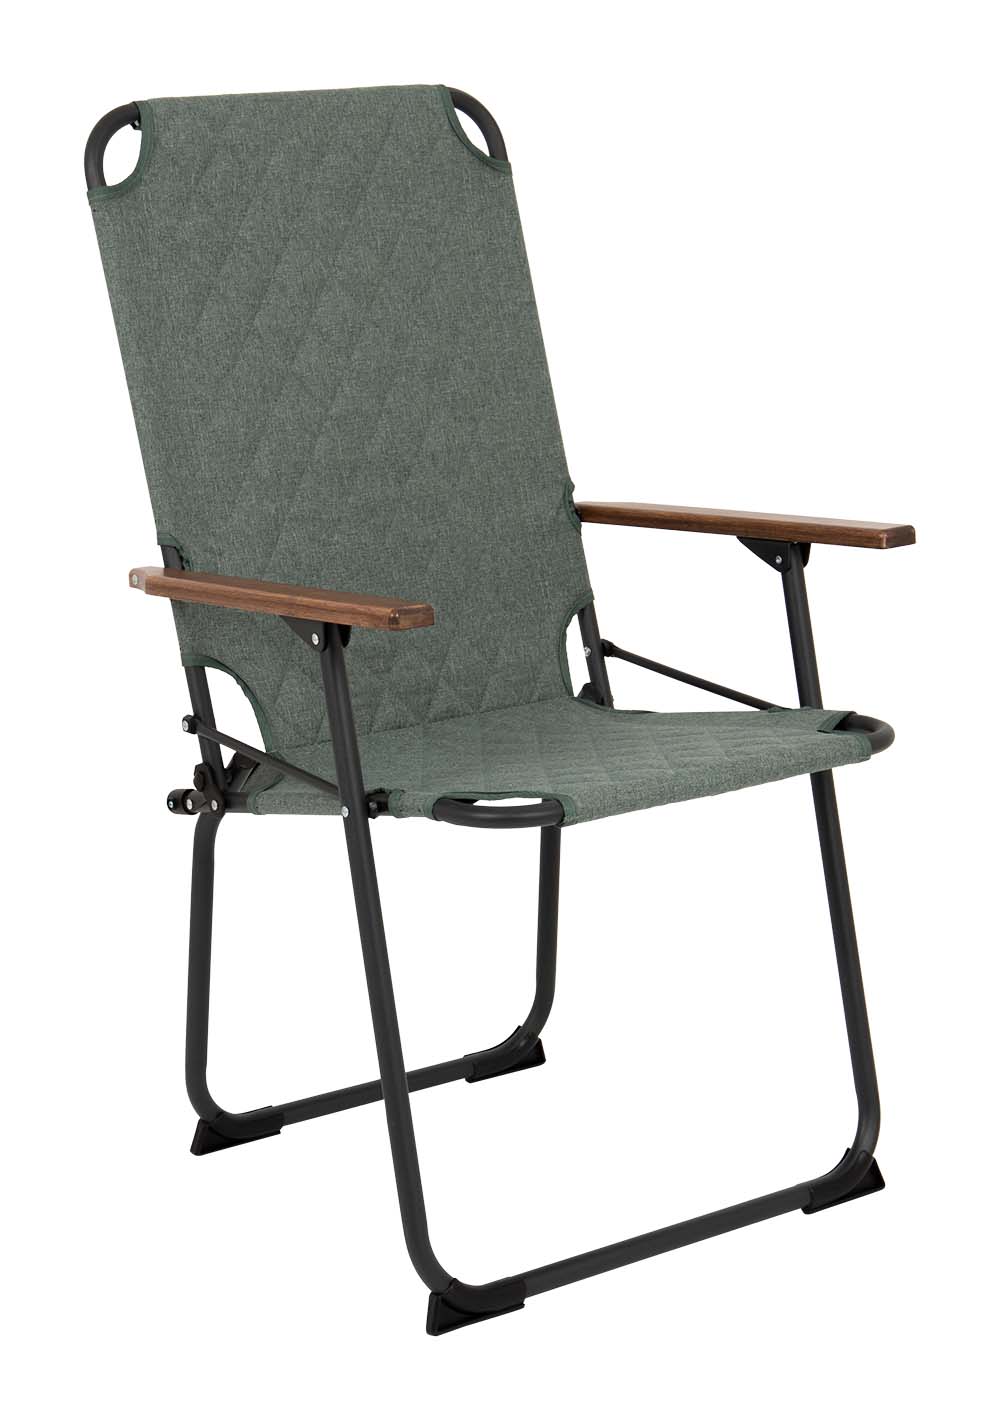 1211886 "Een extra hoge en brede comfortabele klapstoel. De klassieker met een moderne industriële uitstraling. Een stoel waarbij stijl, comfort en functionaliteit worden gecombineerd. Voorzien van een gepolsterde Cationic bekleding voor ultiem comfort, een lichtgewicht aluminium frame en bamboe armleggers. Daarnaast is het stiksel voorzien van een modern patroon. Een ideale stoel voor in de tuin of op de camping, maar ook op het balkon en in de woonkamer. Daarnaast is deze stoel voorzien van extra stabilisatoren en een 'safety-lock' tegen ongewenst inklappen. Compact mee te nemen."